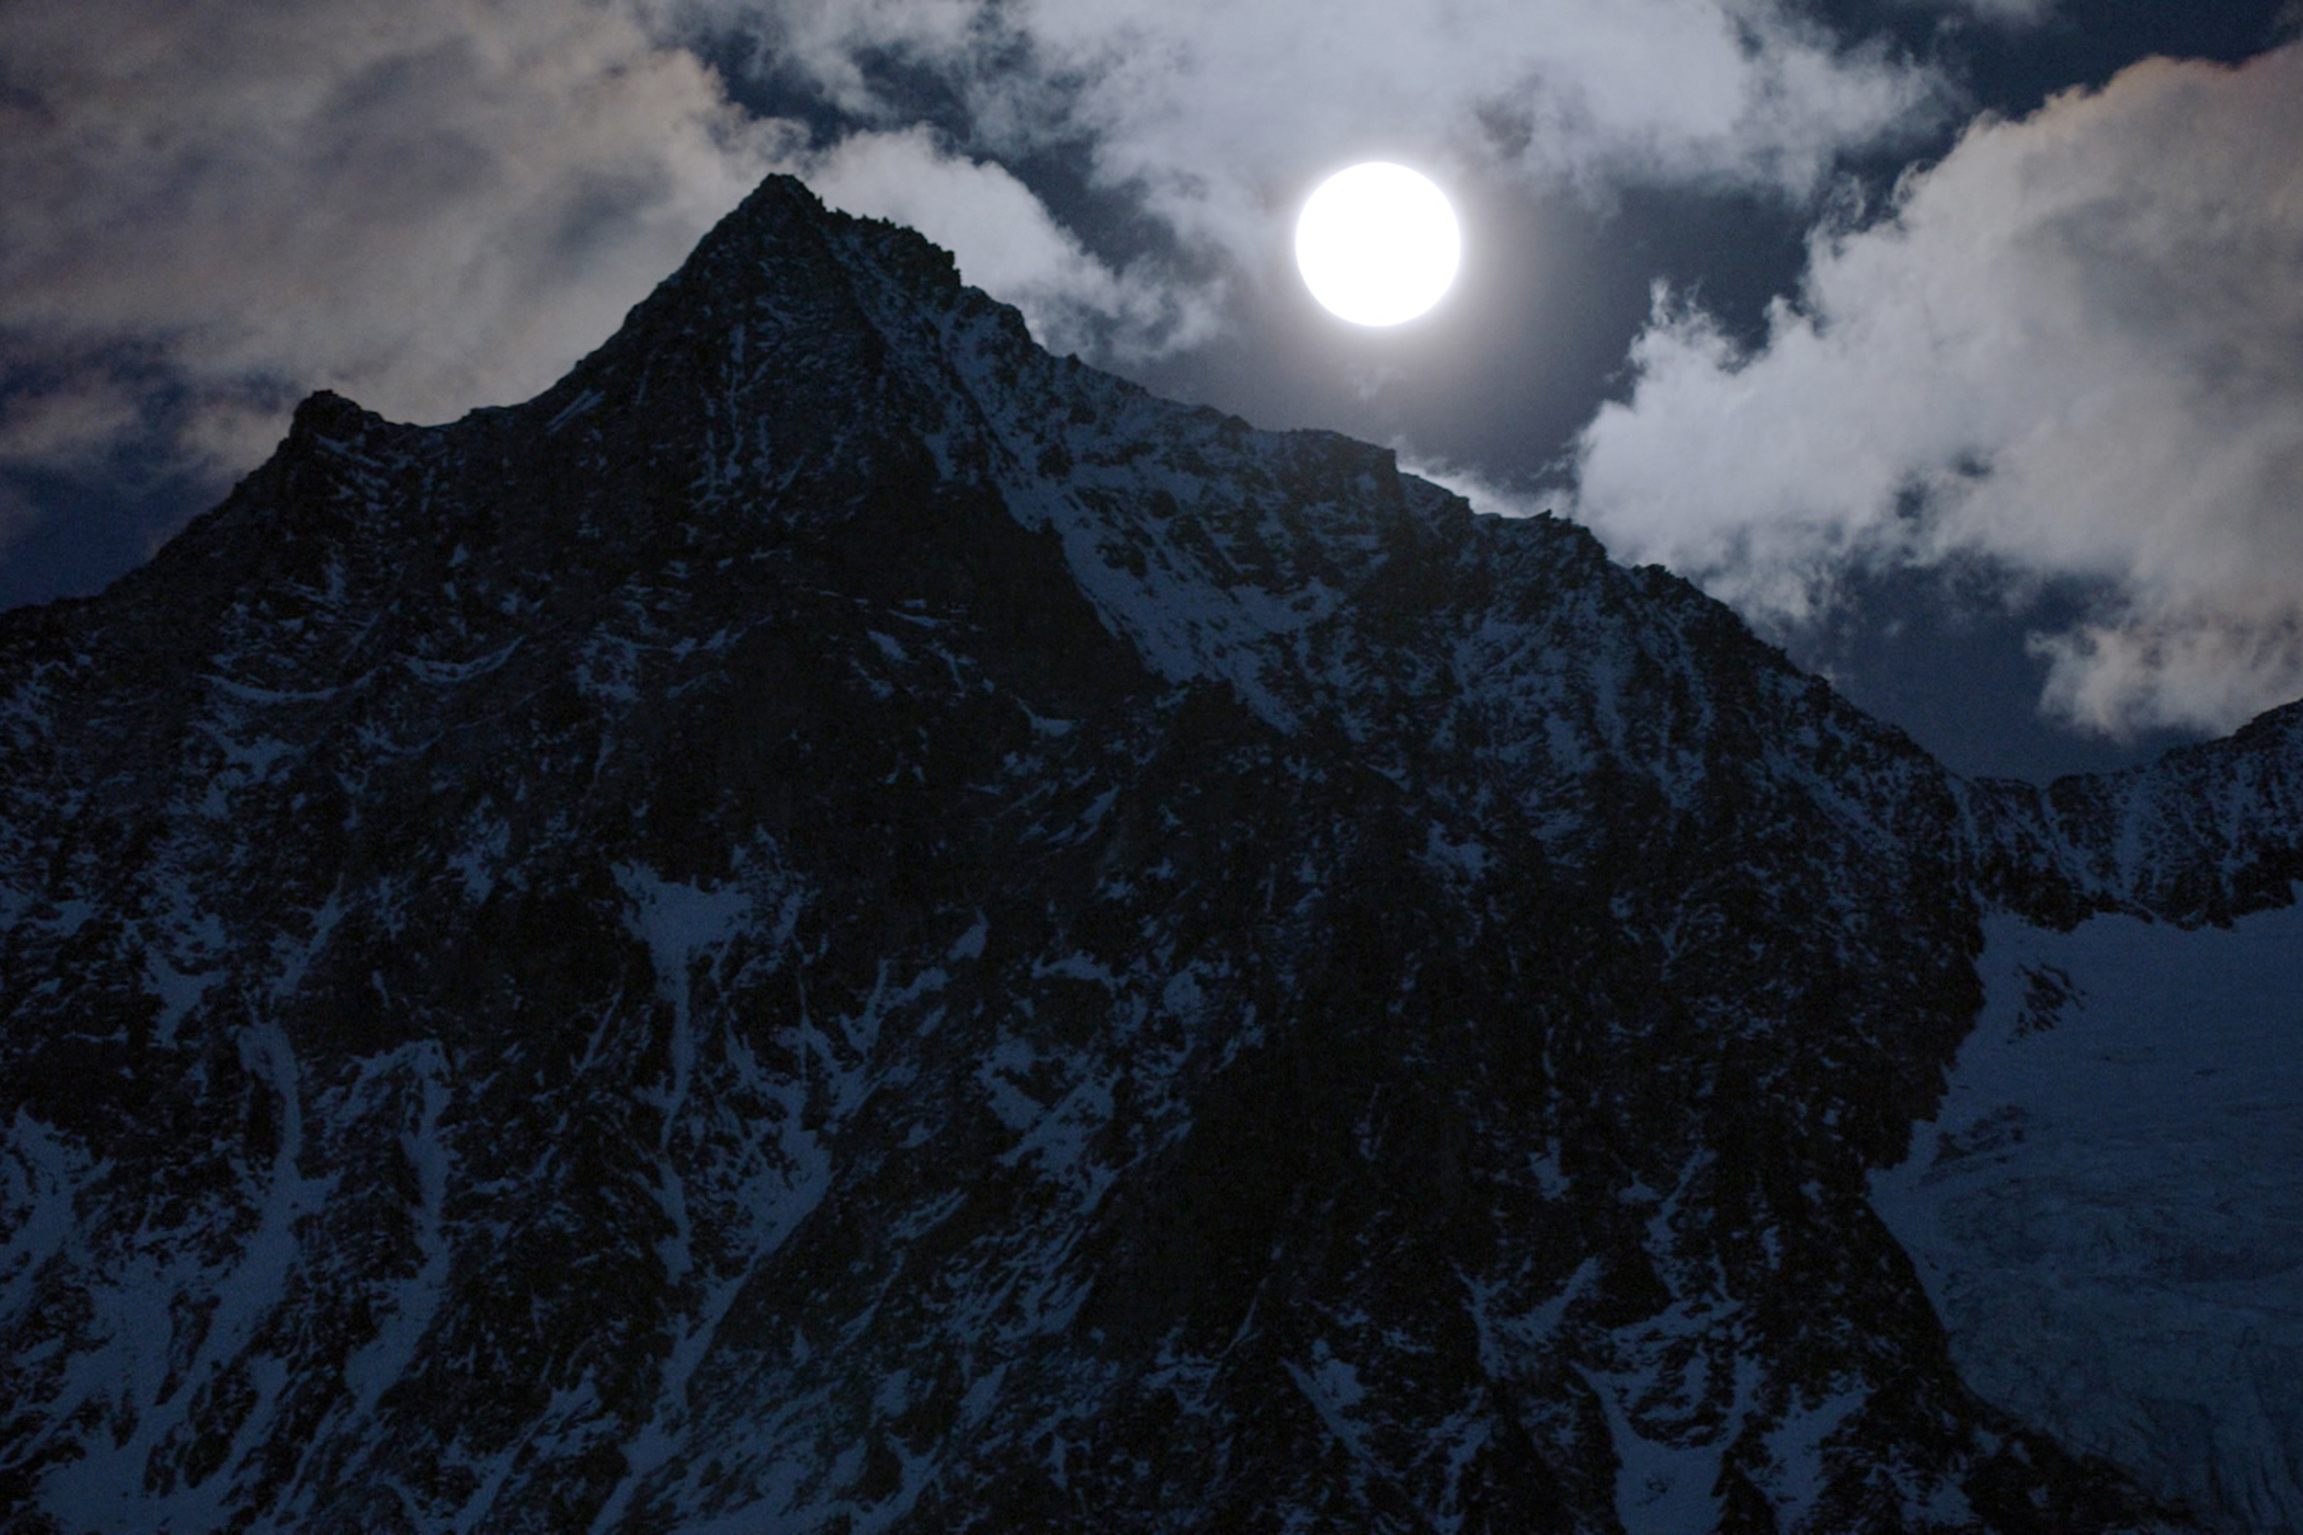 DOK Nacht in der Schweiz - Winter Folge 1 Nahezu magisch erscheinen die Gipfel der Alpen im Mondlicht 2020